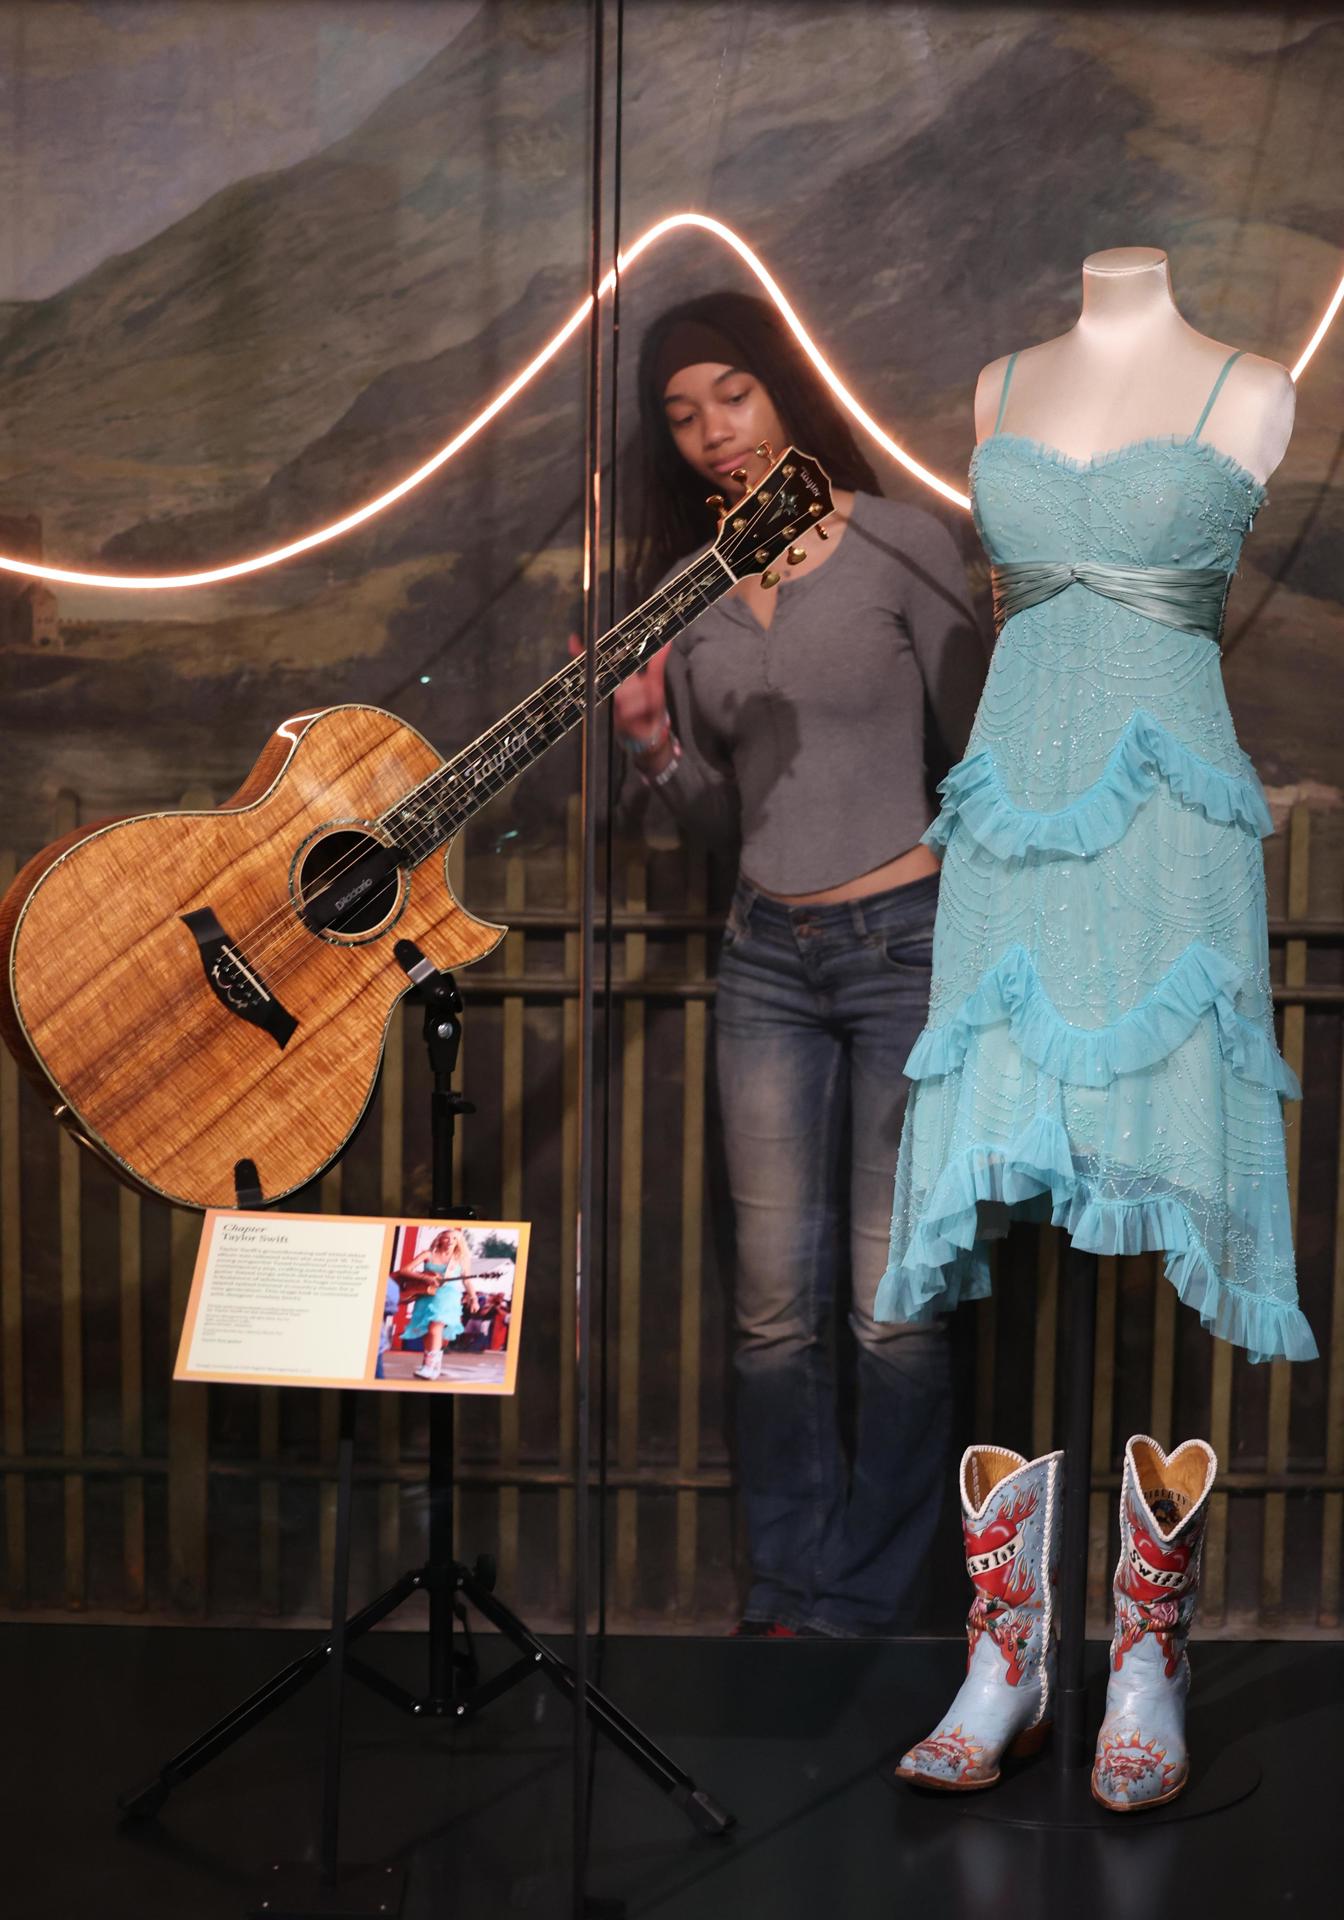 Un museo en Londres expone el closet y memorabilia de Taylor Swift